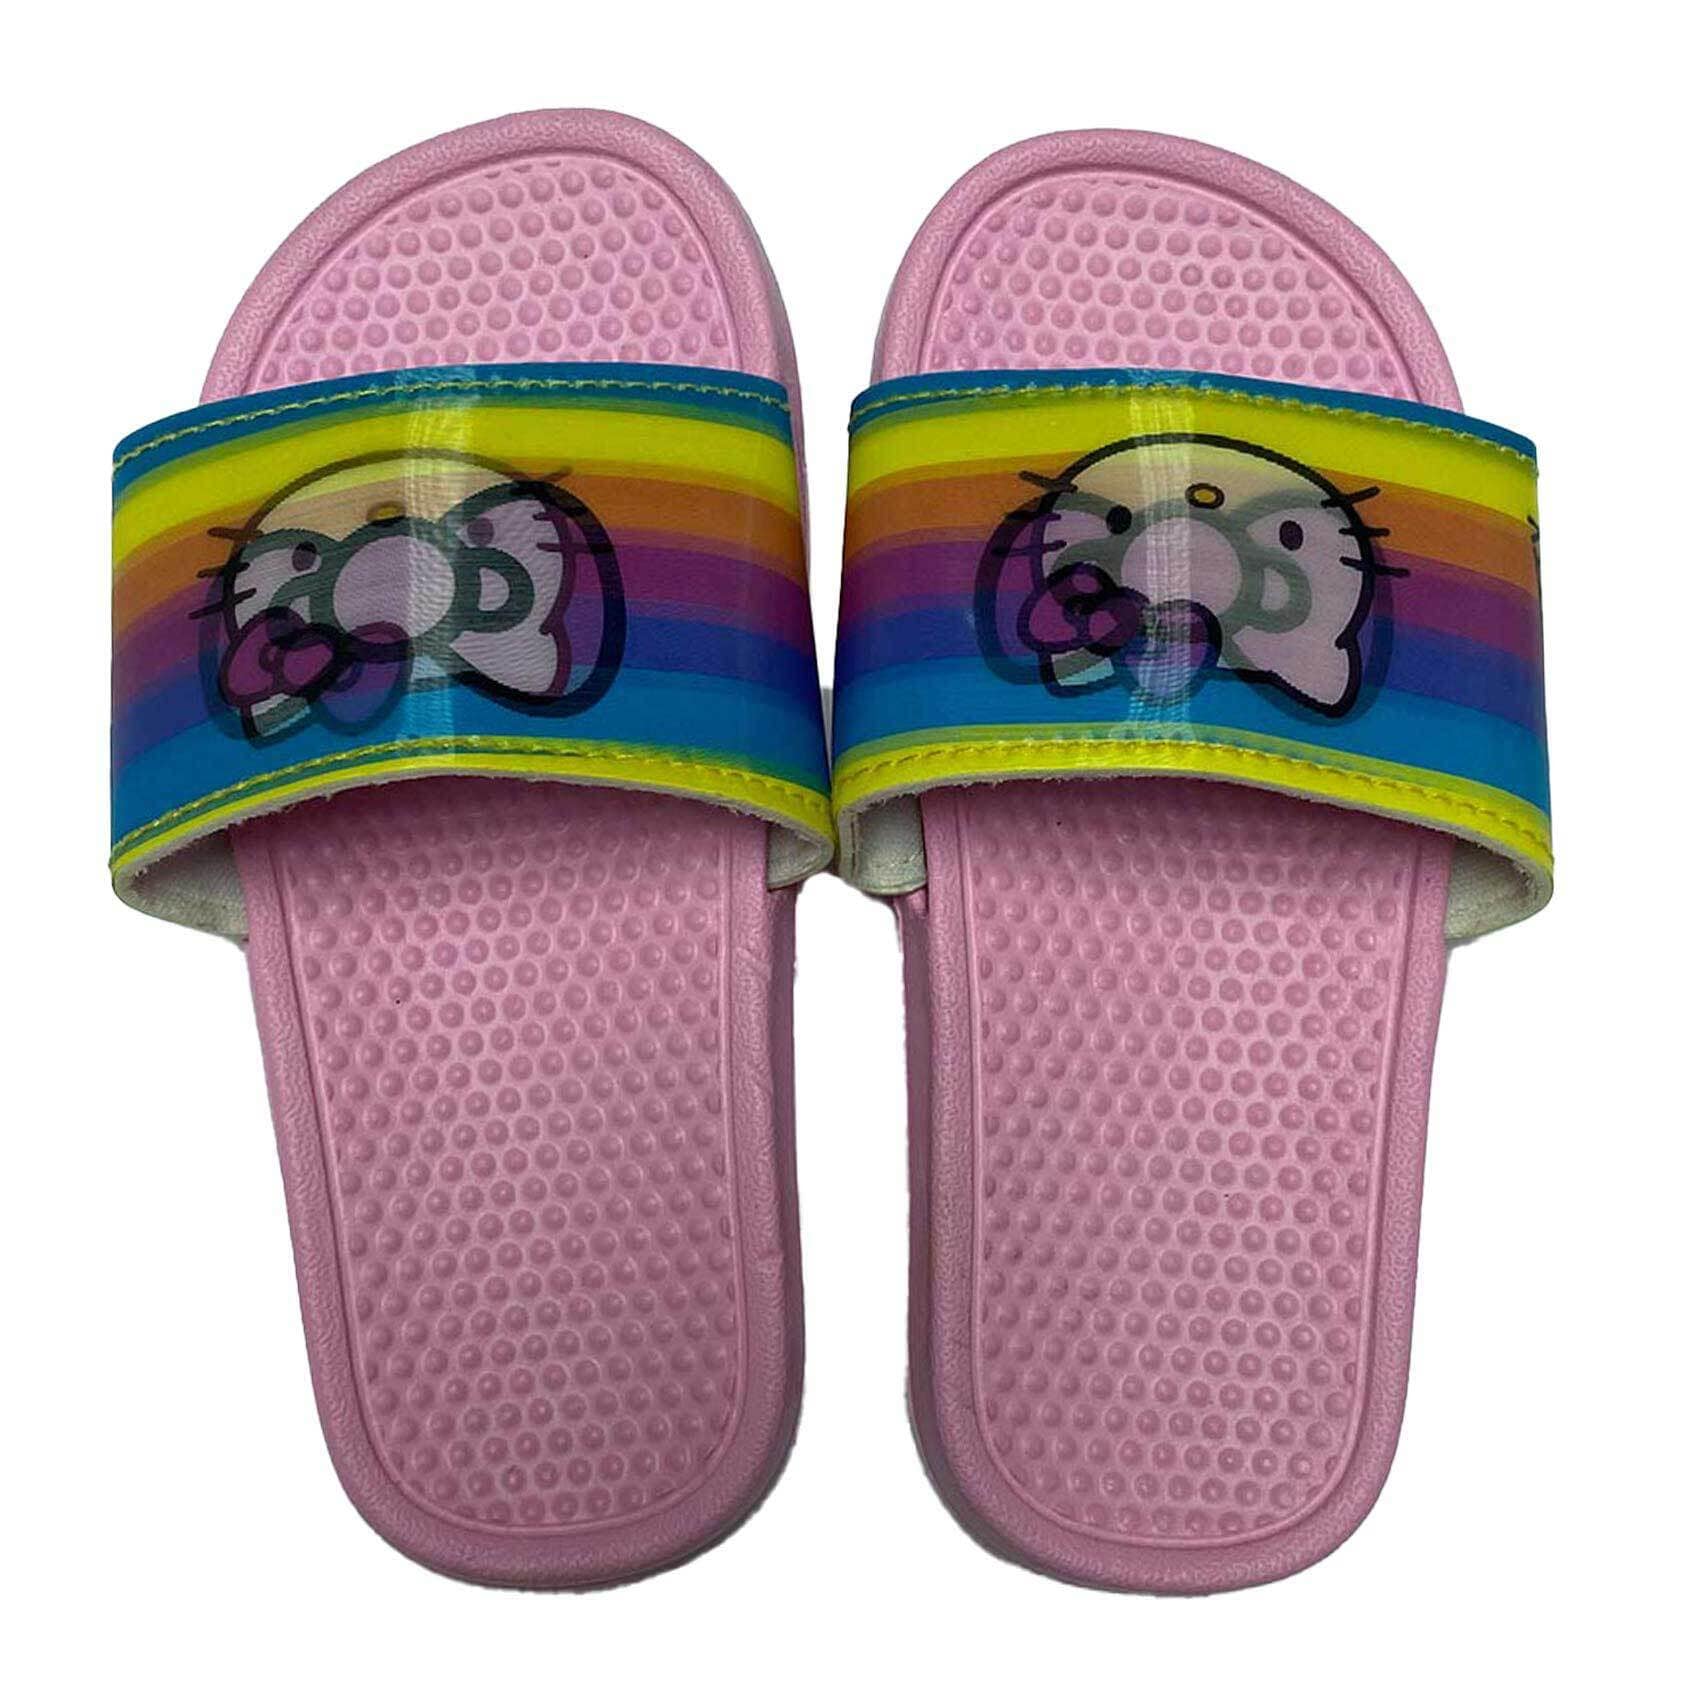 Buy Al Nasser HK005599 Slipper for Girls - Blue/Pink - Size 31